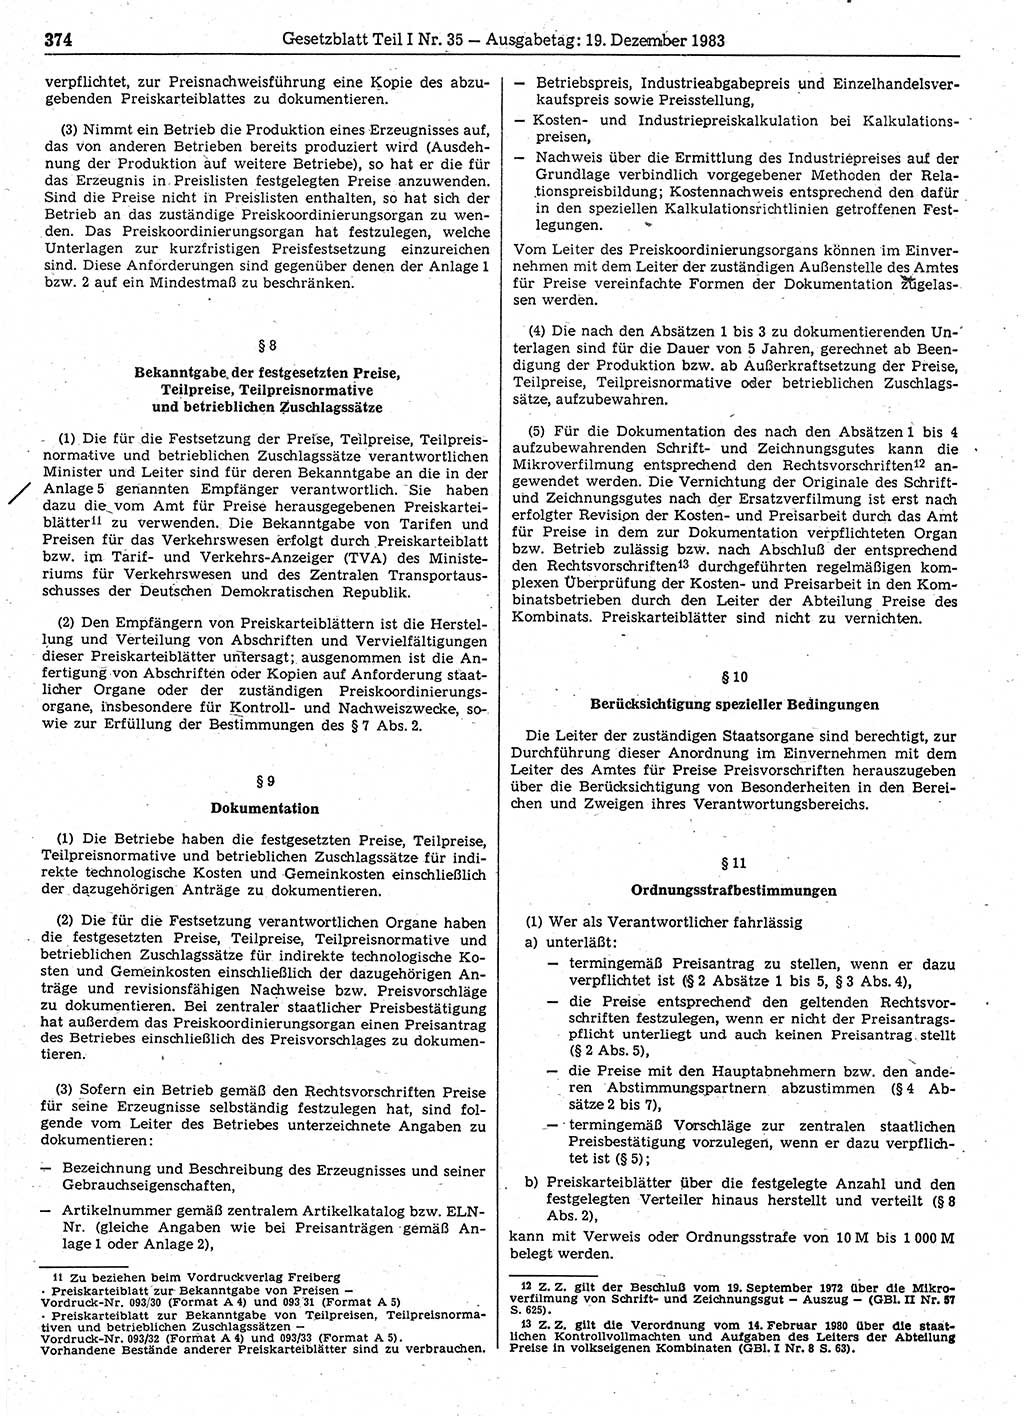 Gesetzblatt (GBl.) der Deutschen Demokratischen Republik (DDR) Teil Ⅰ 1983, Seite 374 (GBl. DDR Ⅰ 1983, S. 374)